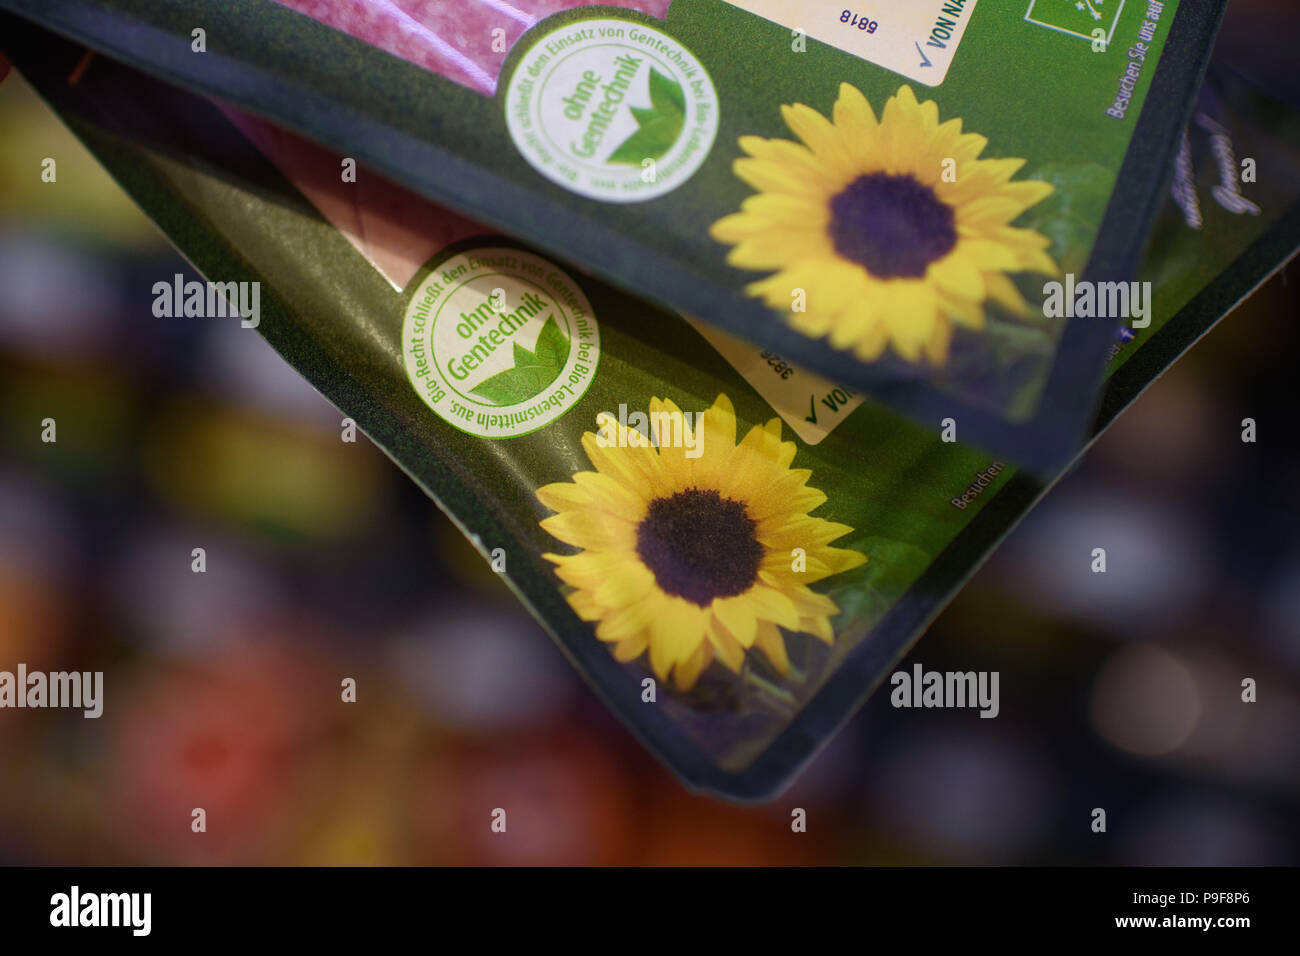 16. Juli 2018, Berlin, Deutschland: Die Zertifizierung "Ohne Gentechnik" können auf ein Paket von Wurst in einen Bio-supermarkt gesehen werden. Foto: Gregor Fischer/dpa Stockfoto